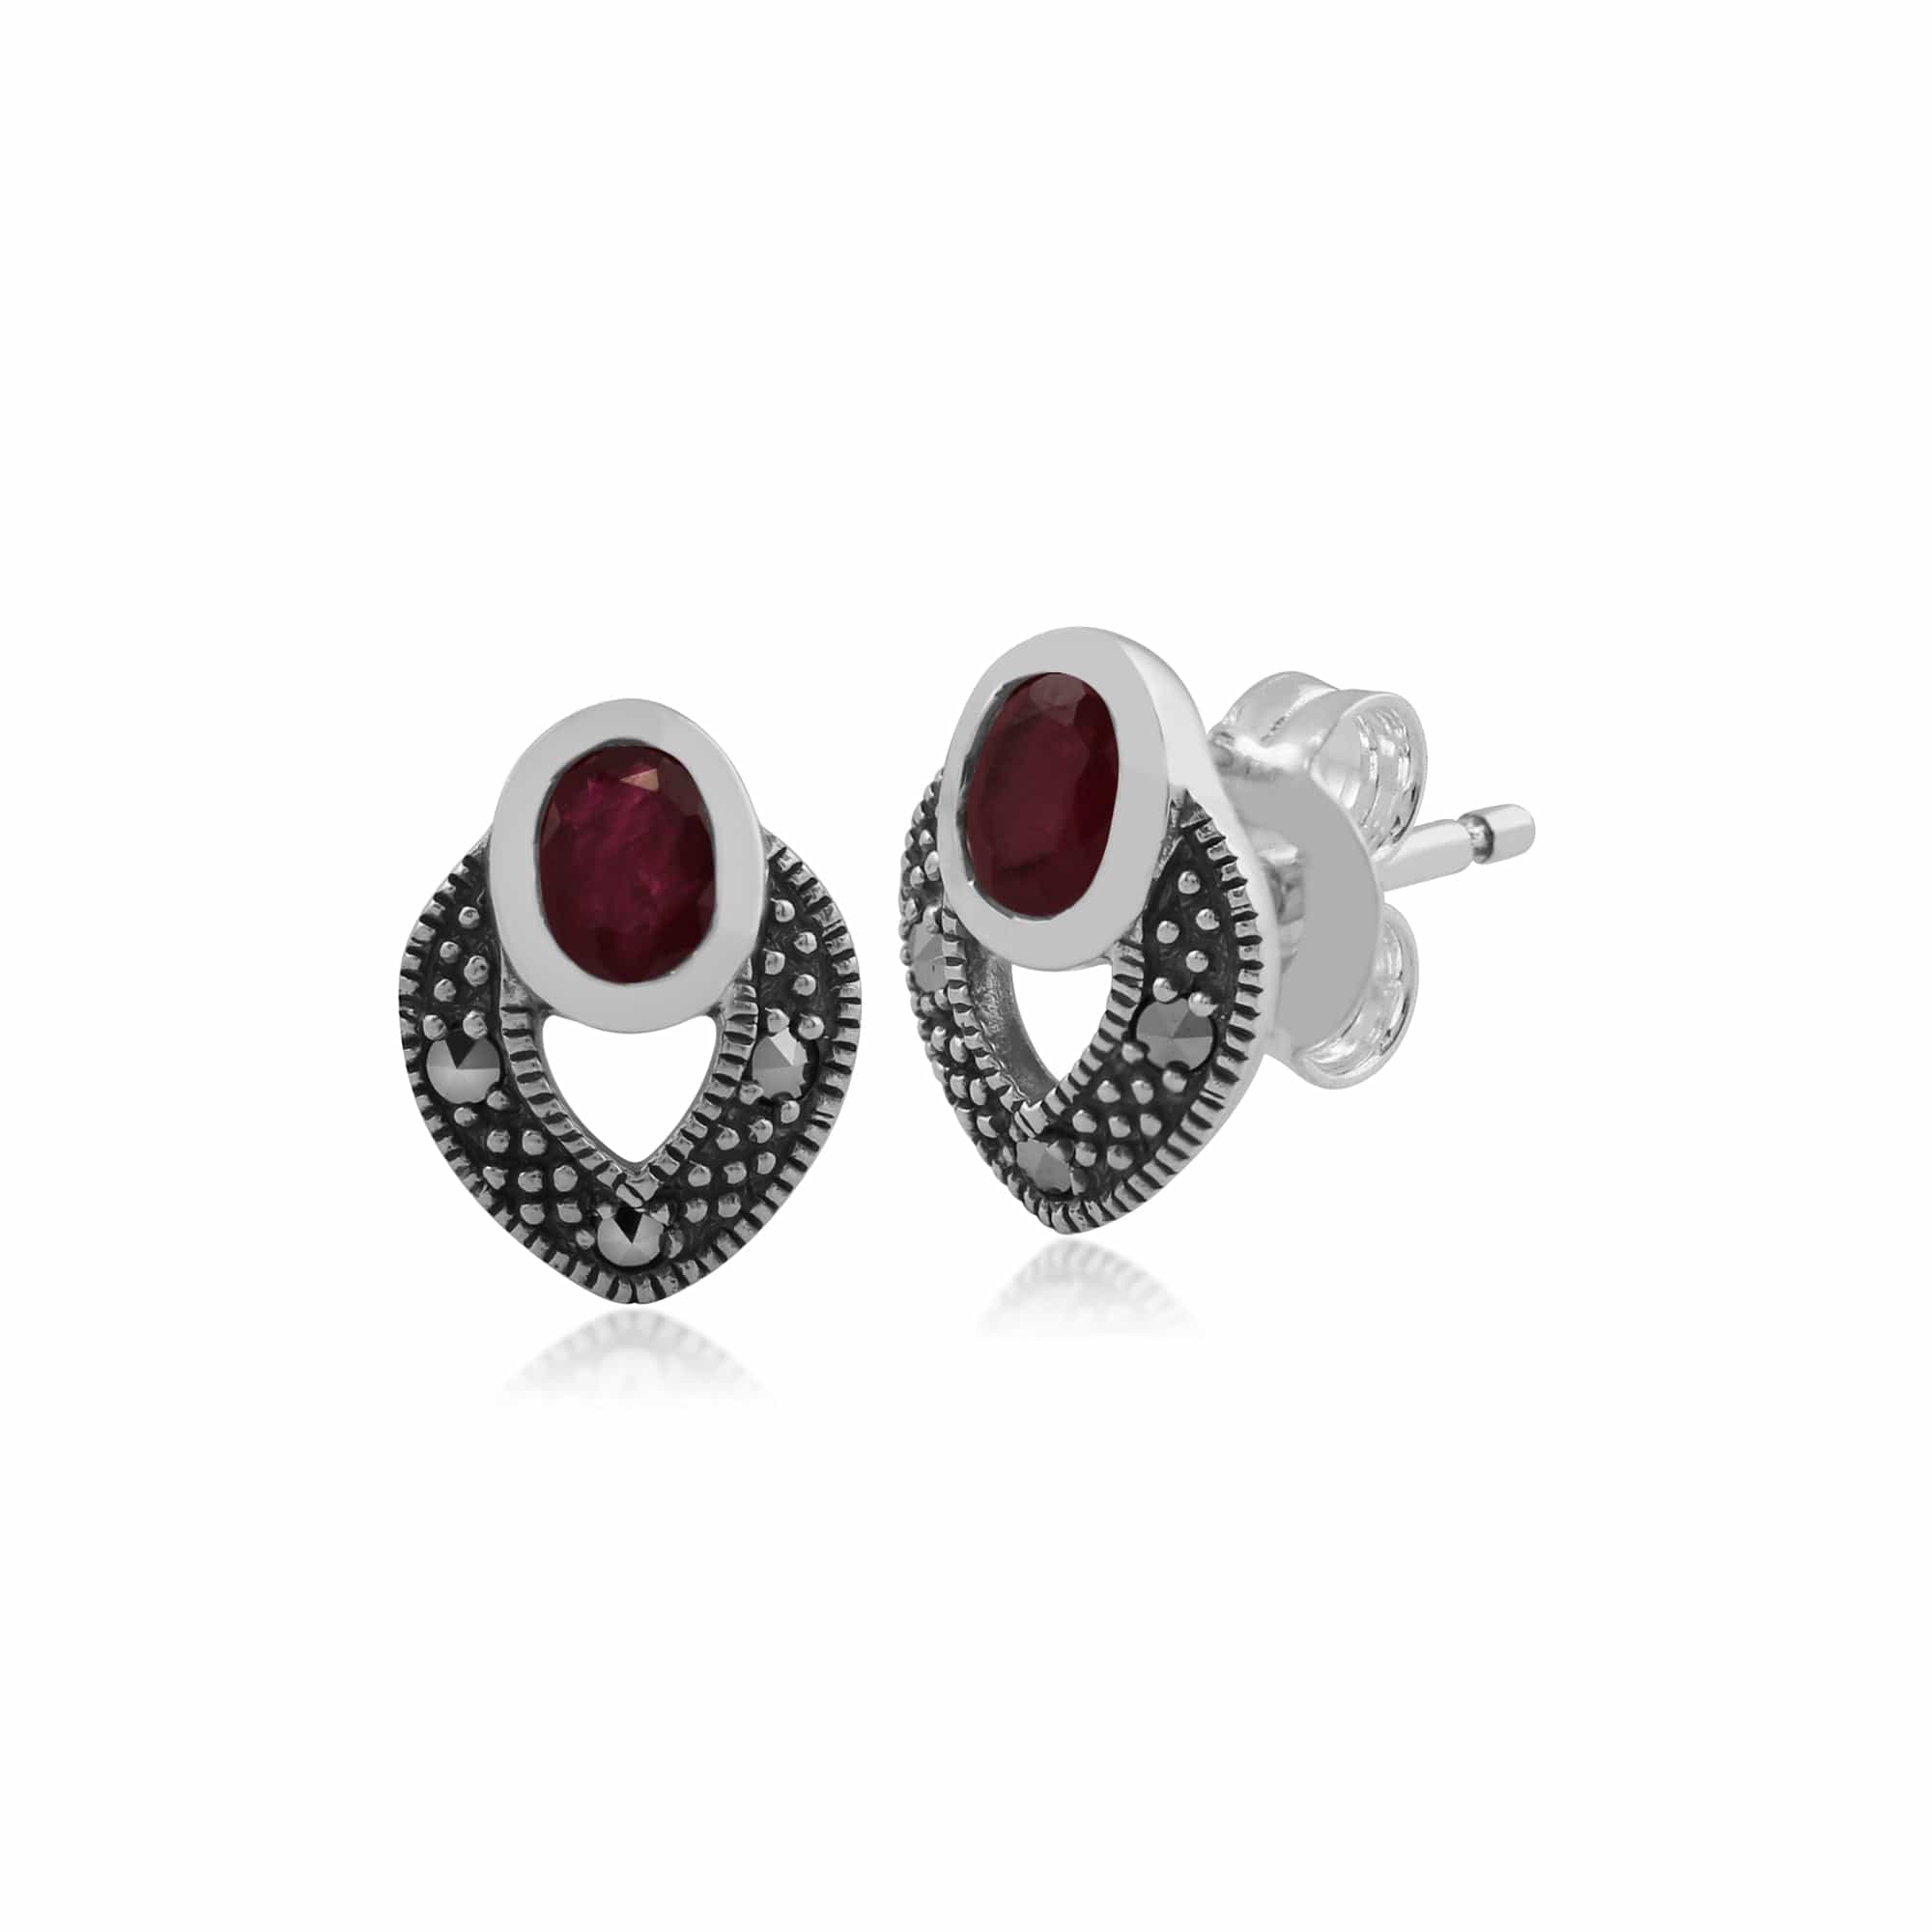 Art Deco Style Oval Ruby & Marcasite Stud Earrings in 925 Sterling Silver - Gemondo